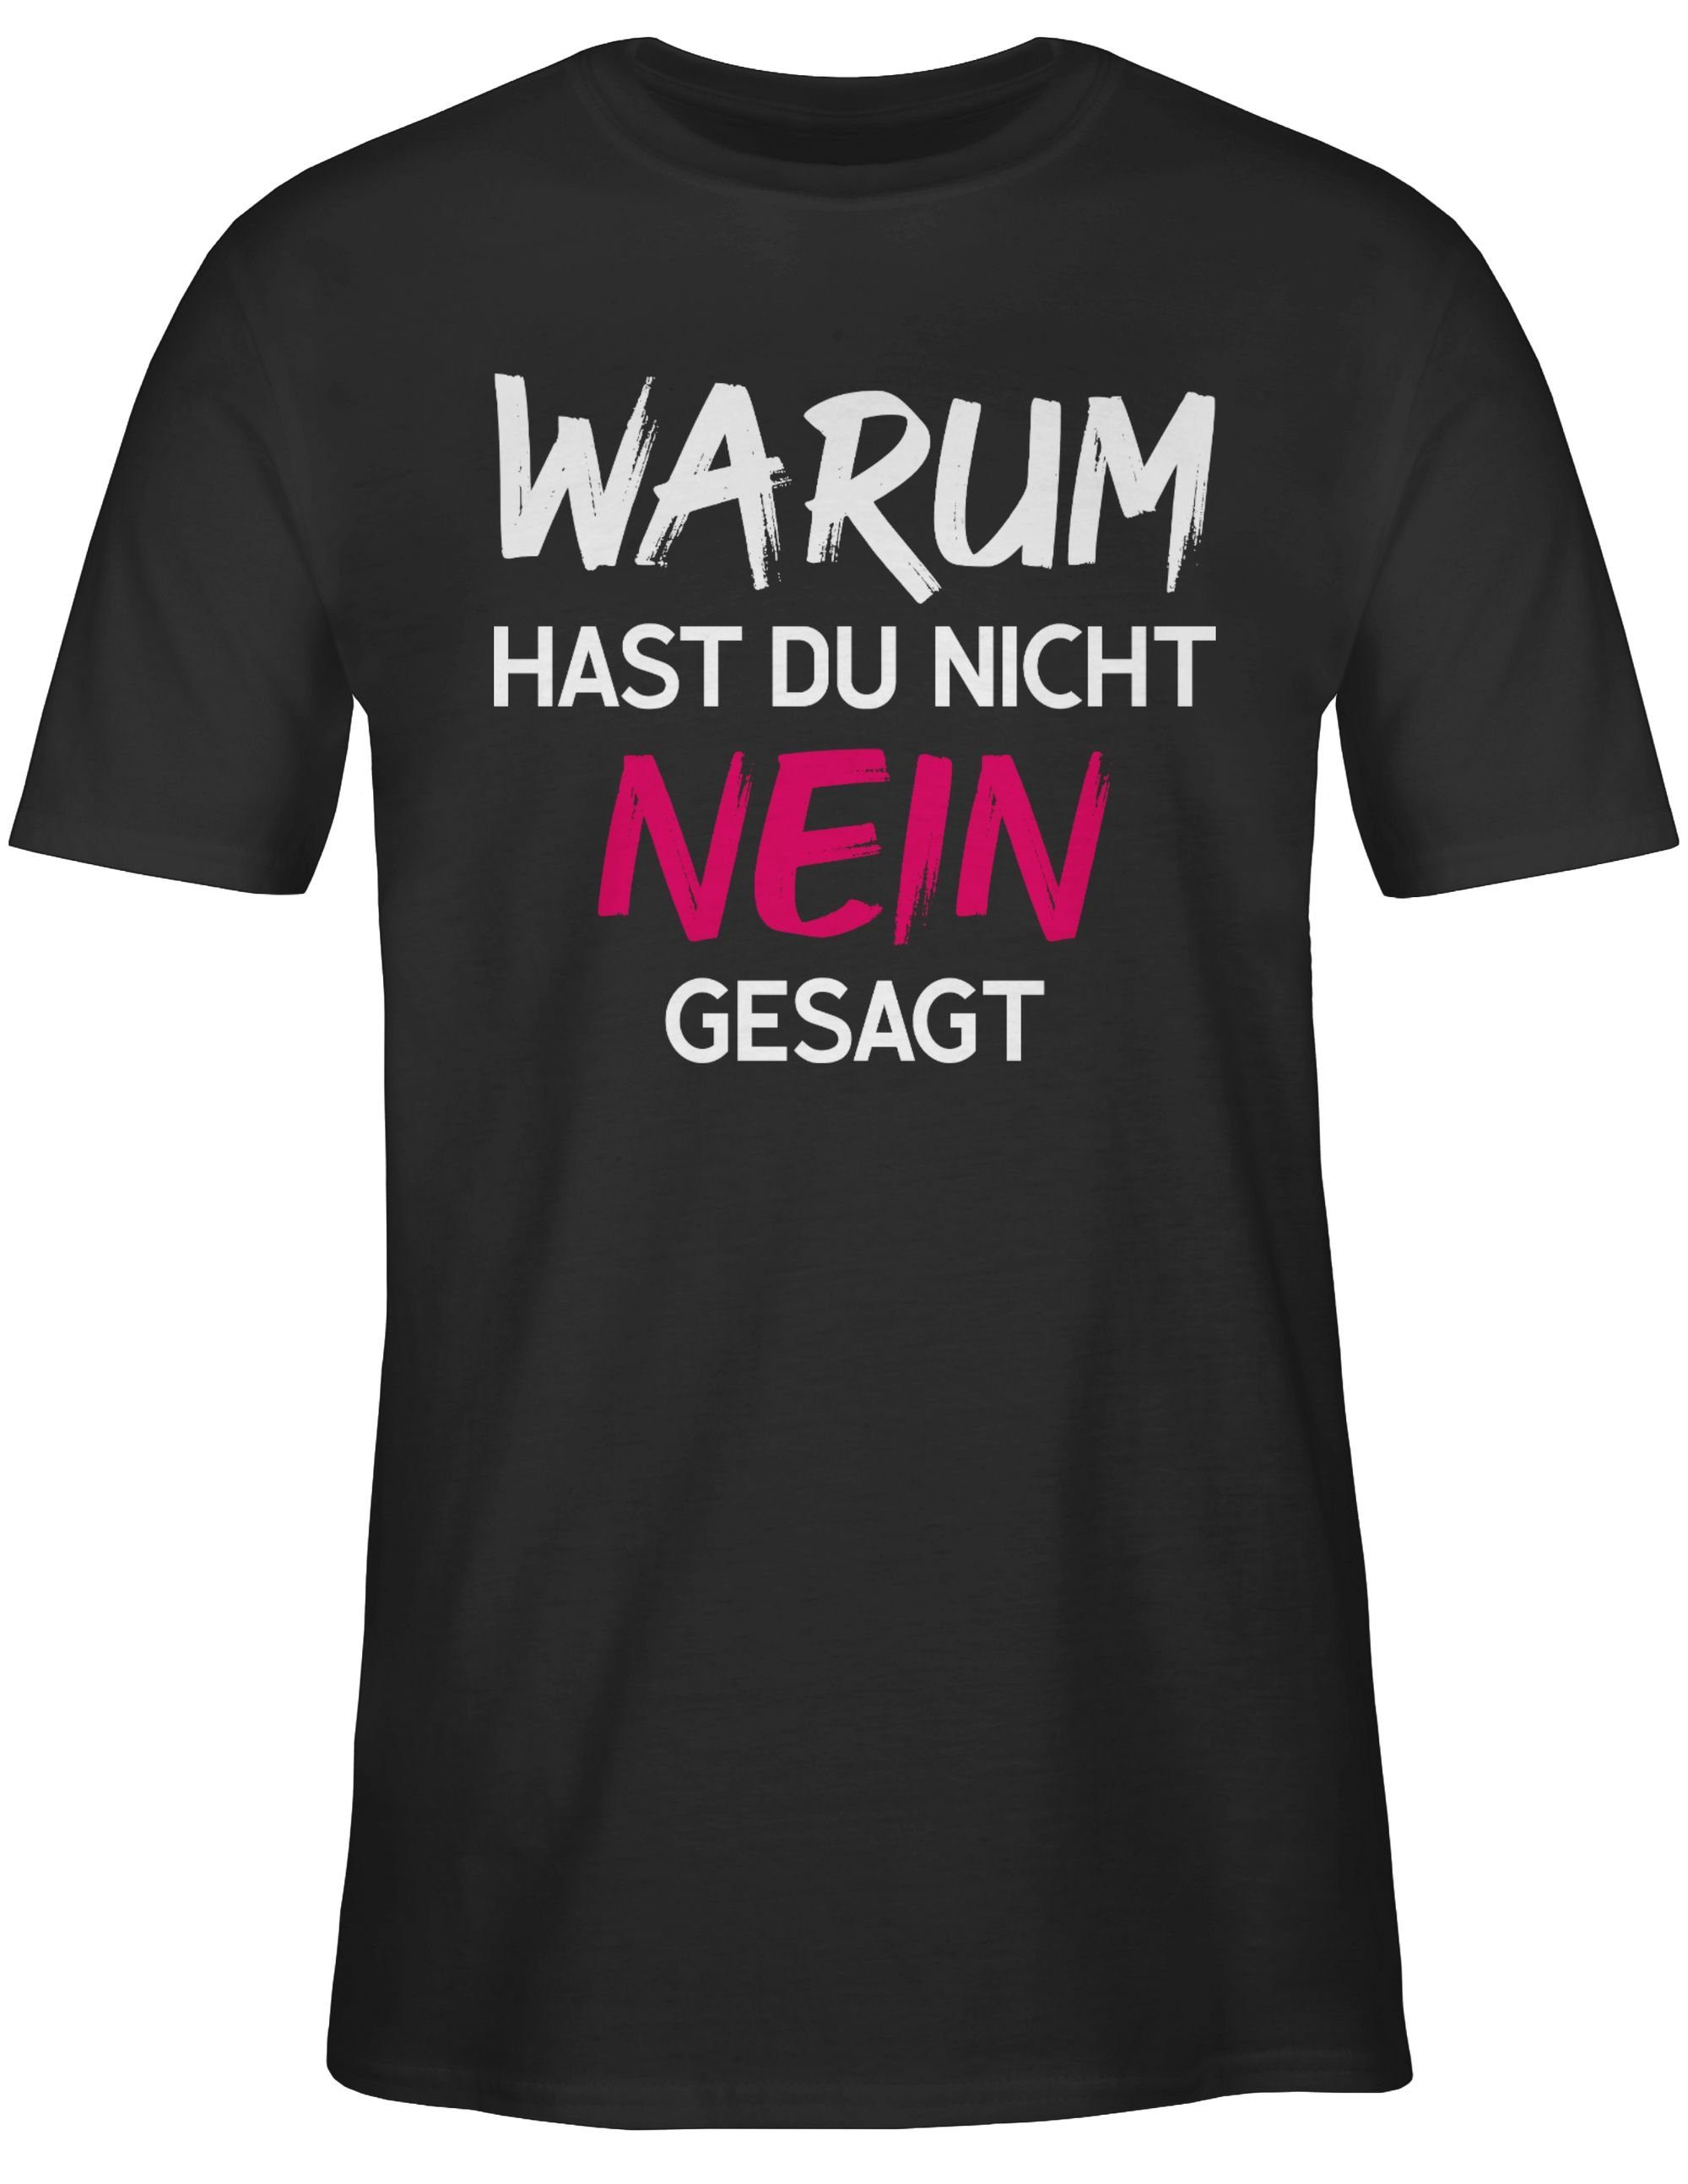 Shirtracer T-Shirt Warum für hast du nicht nein gesagt Schlager Party Outfit 01 Schwarz